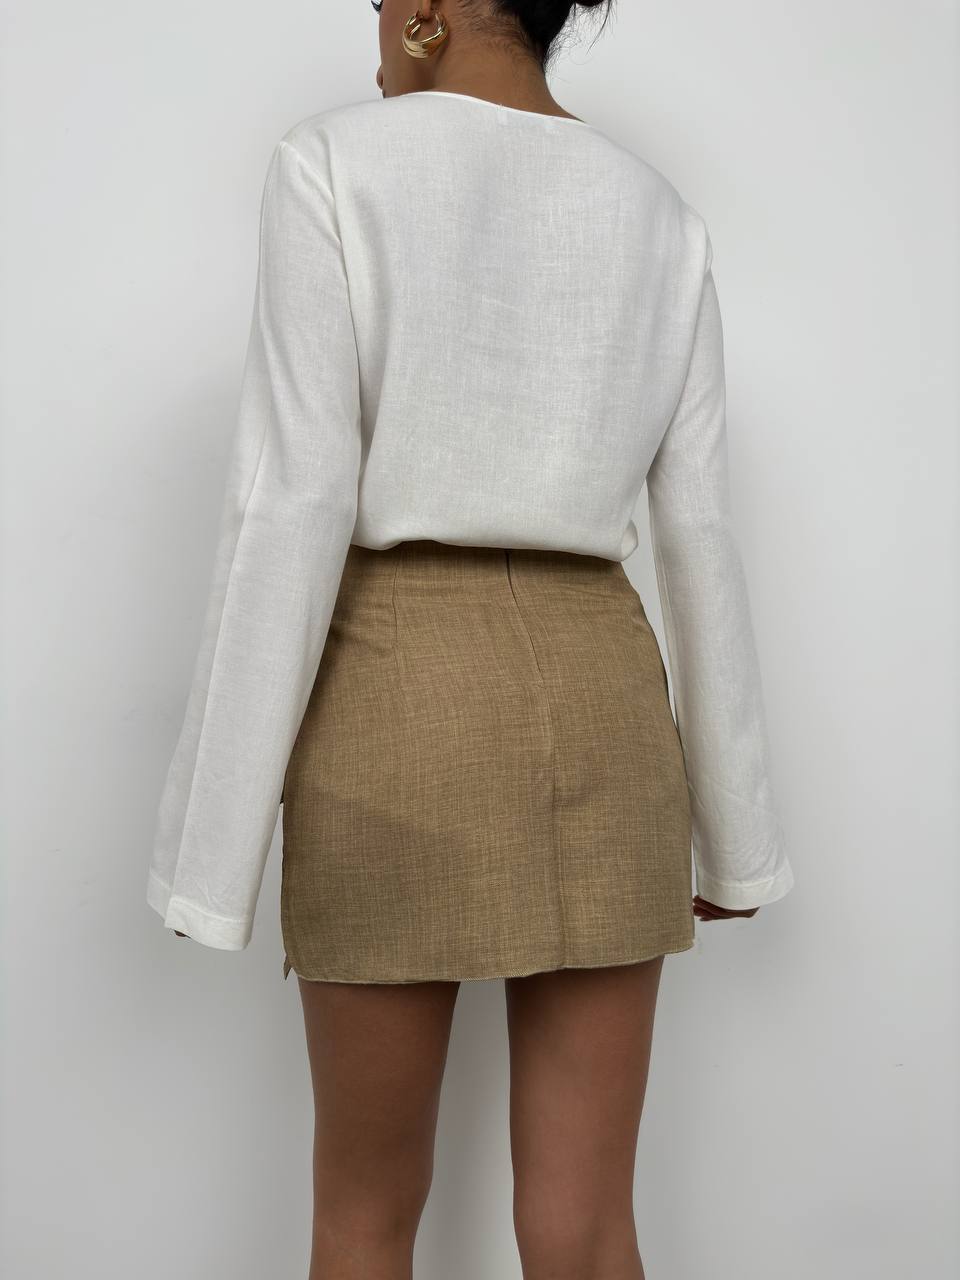 BK1057 - Skirt